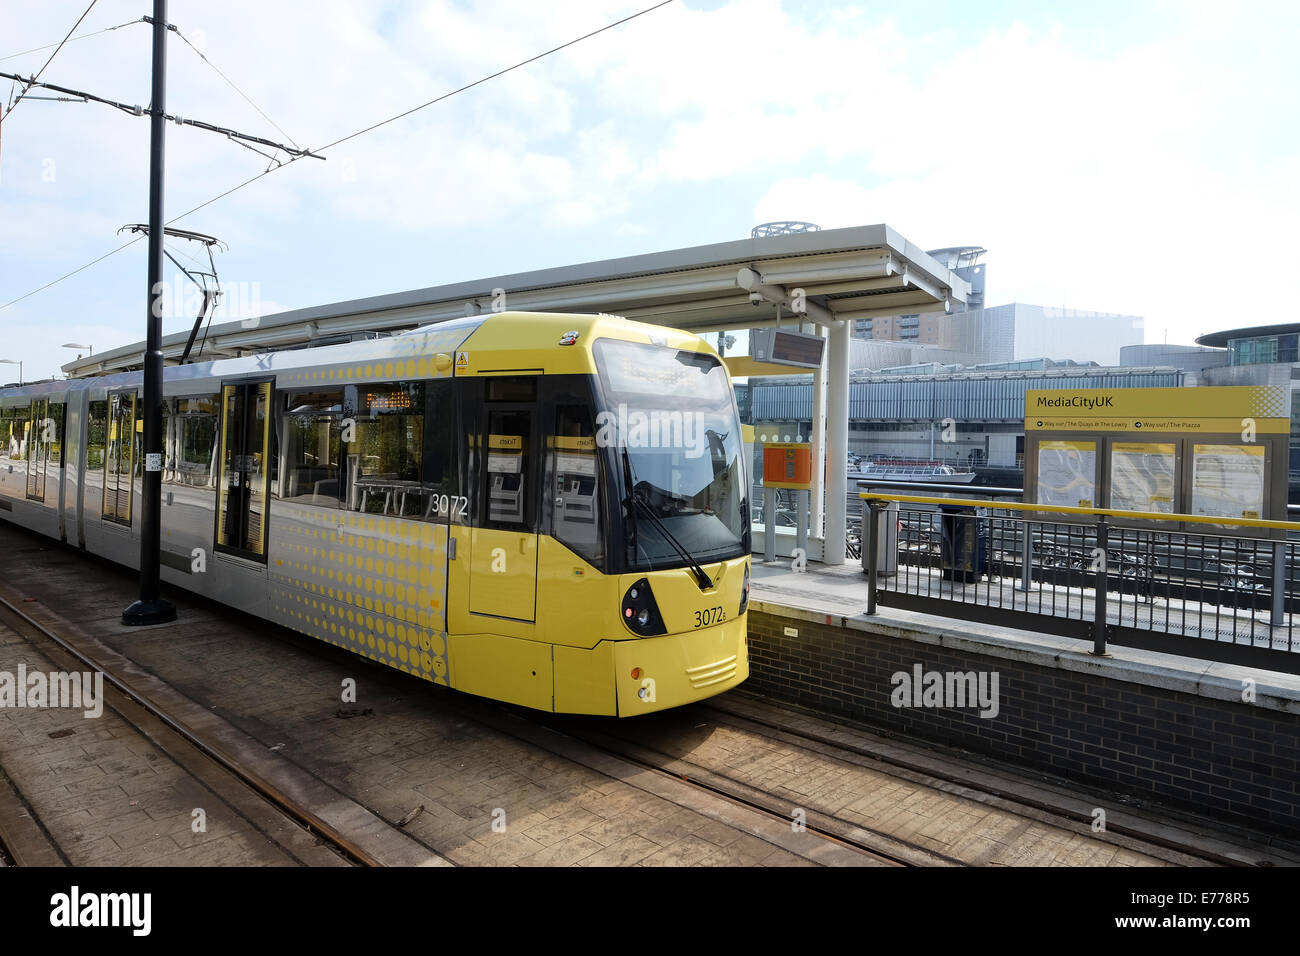 Media City collegamenti di trasporto tramite il tram a Salford Quays, Manchester Foto Stock